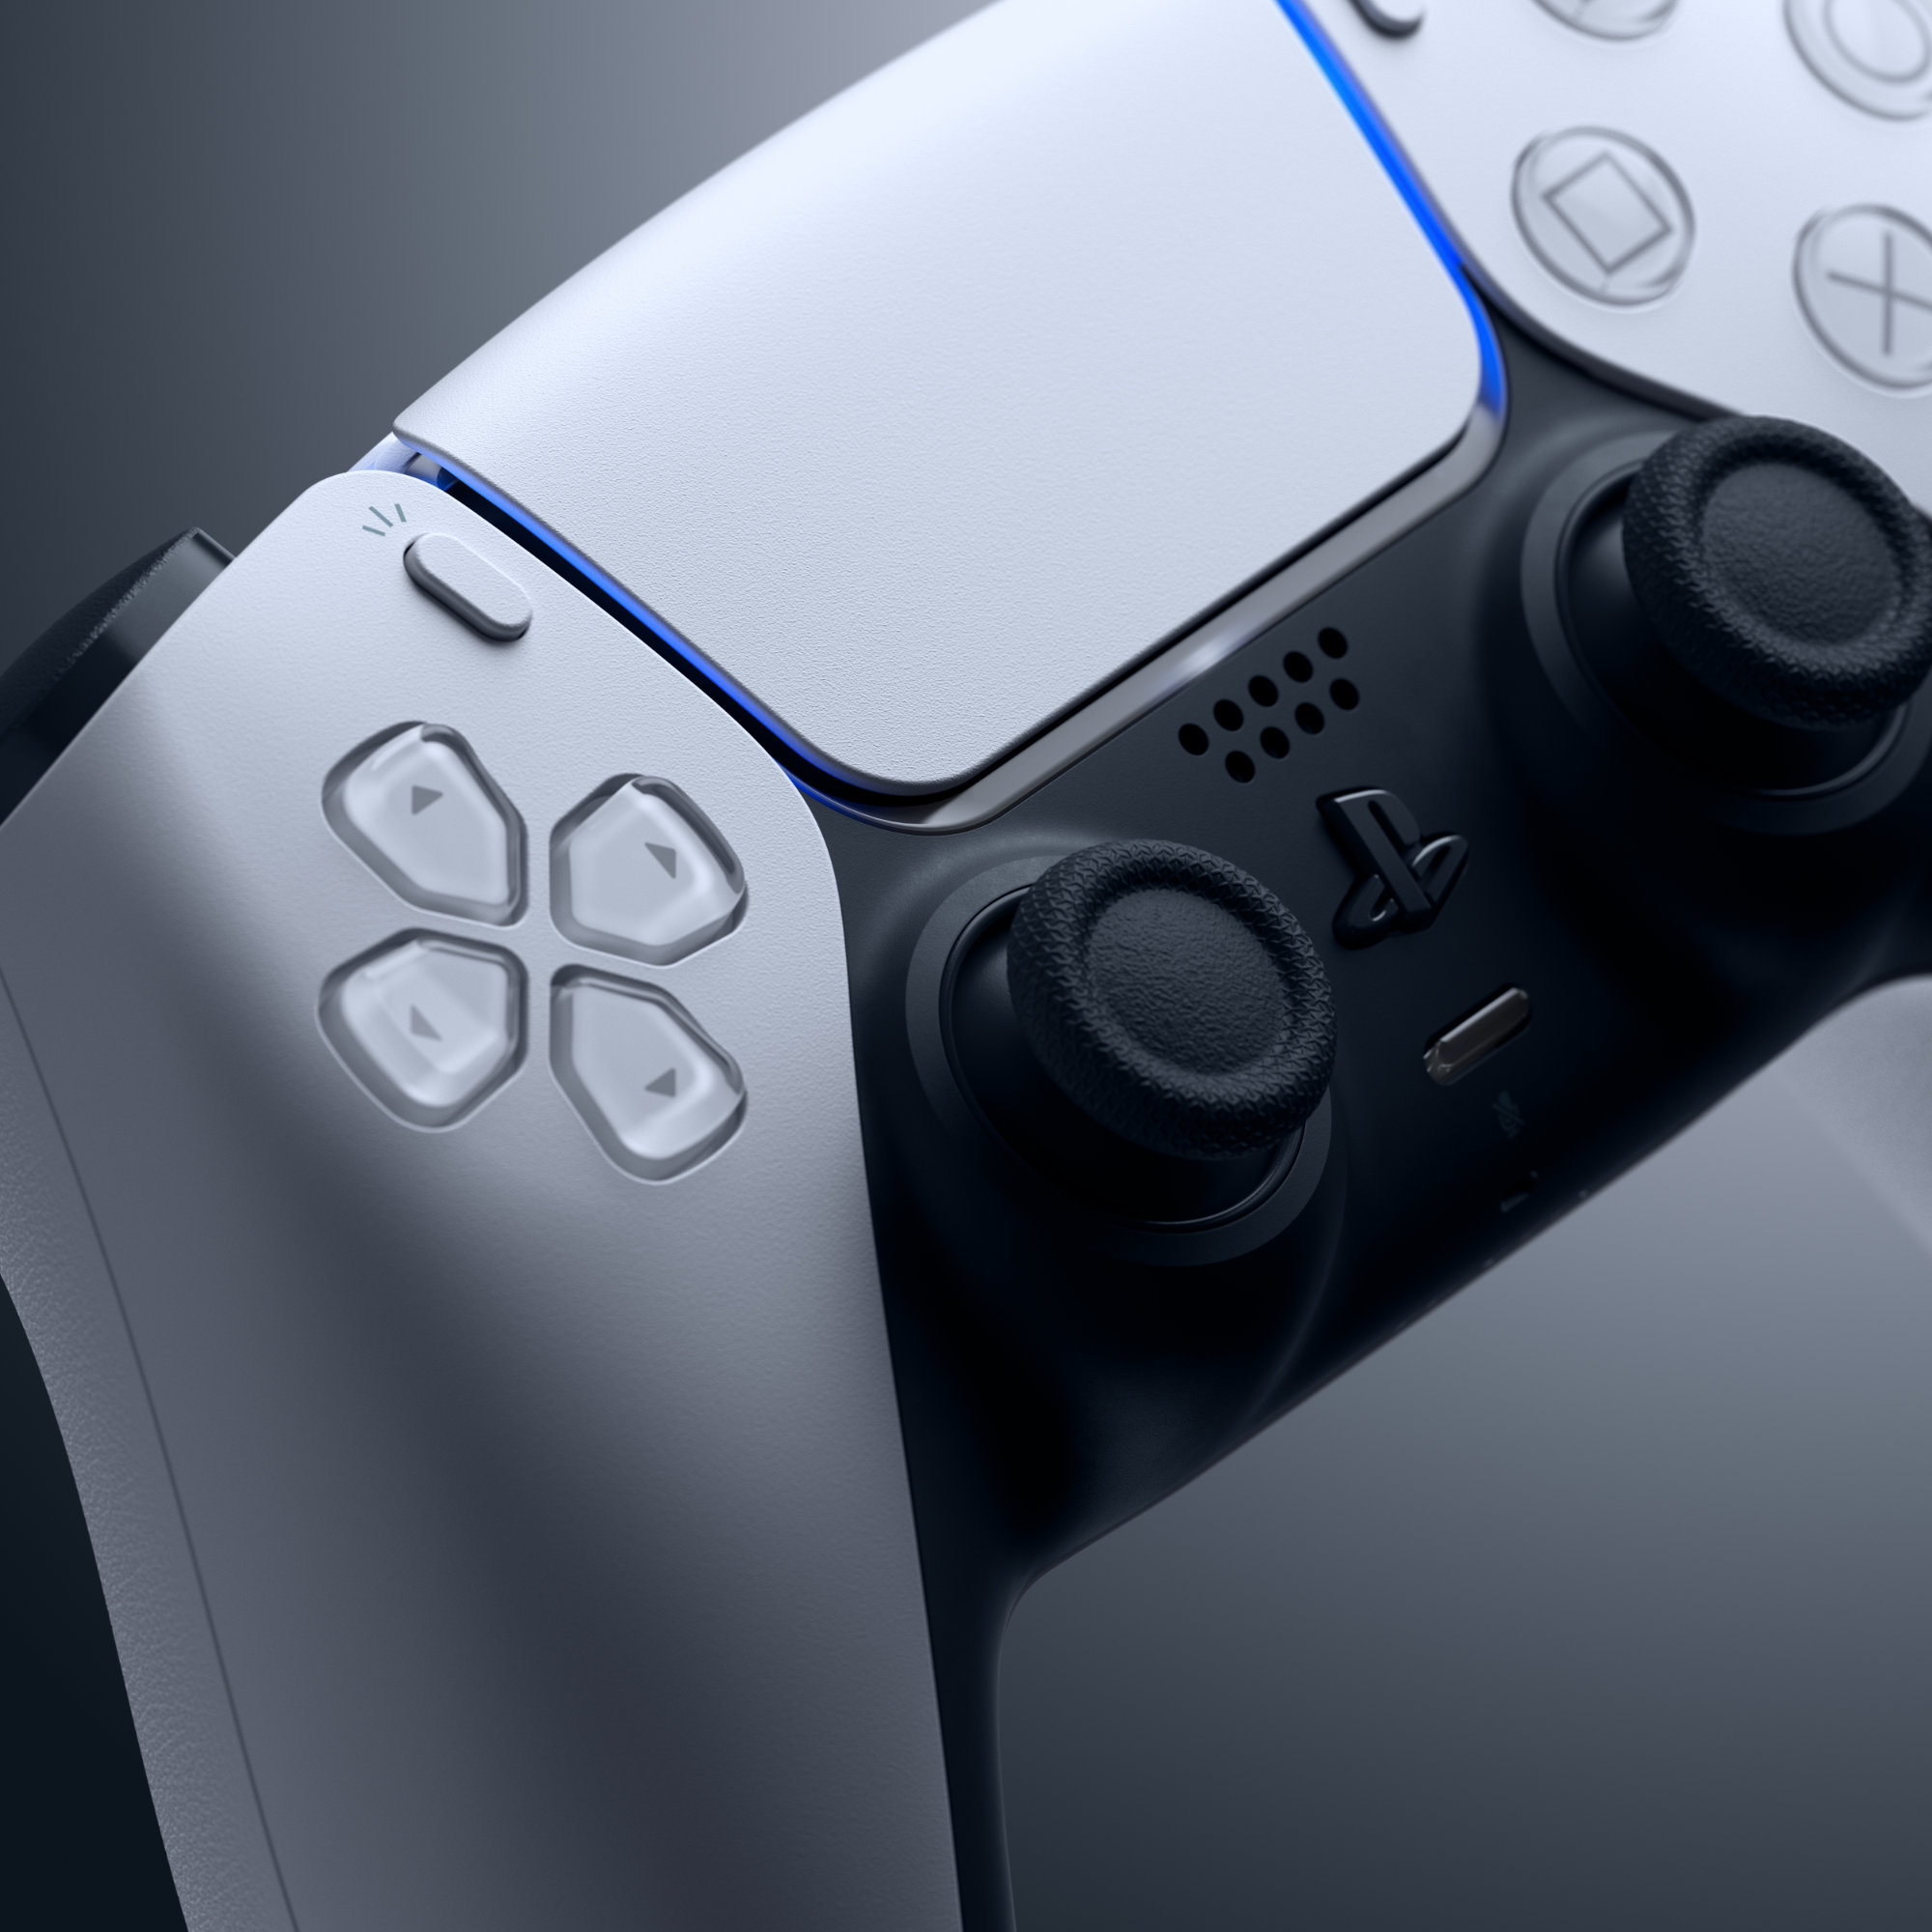 Sony, Manette PlayStation 5 officielle DualSense, Sans fil